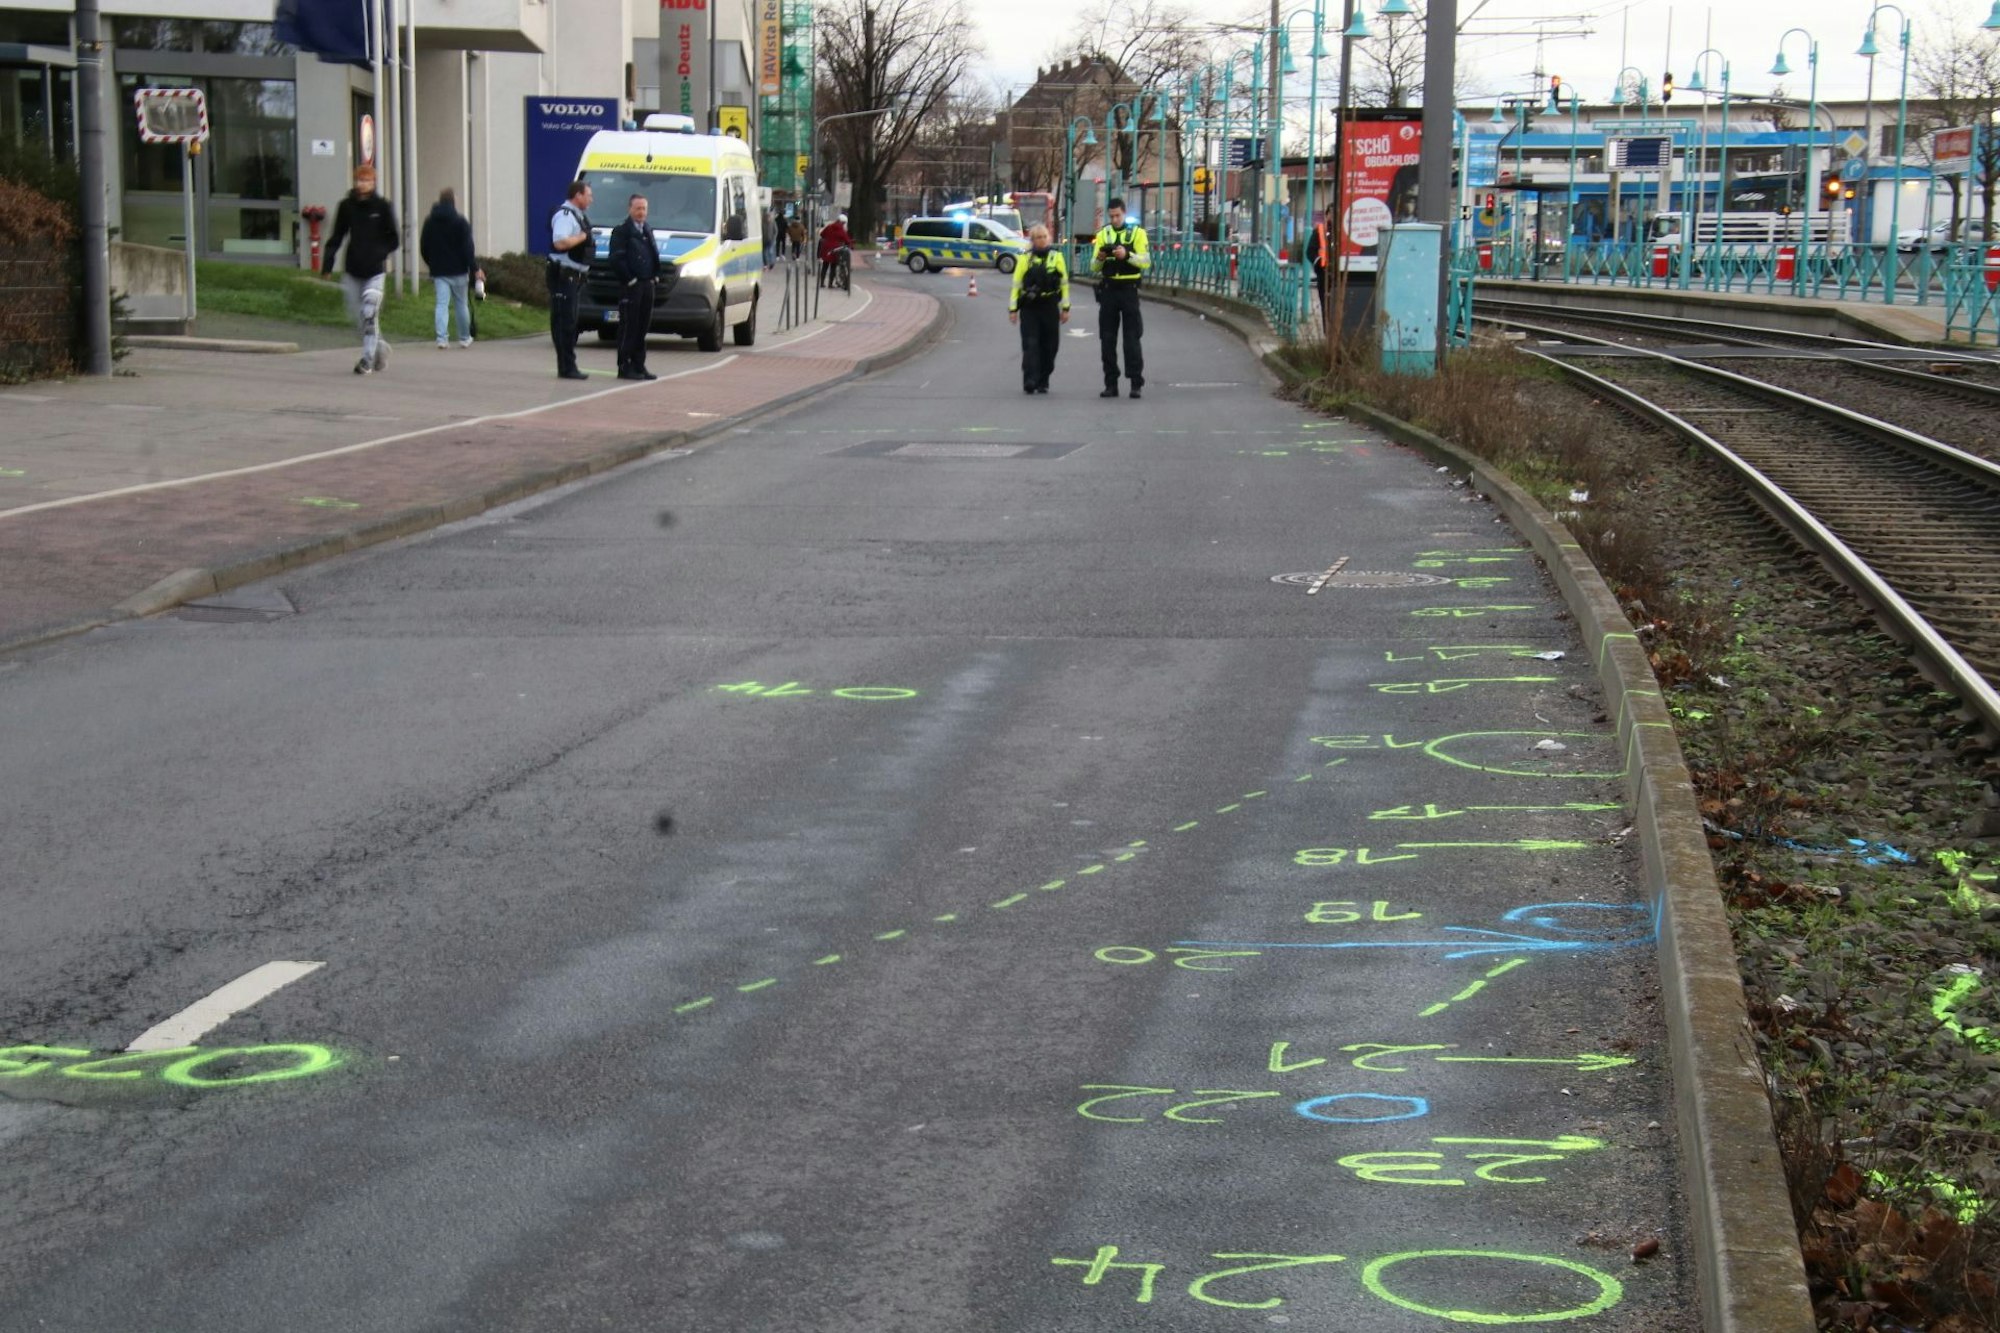 Die Polizei ist auf einer Straße im Einsatz, hat dort mit Kreisen, Pfeilen und Ziffern Spuren markiert.